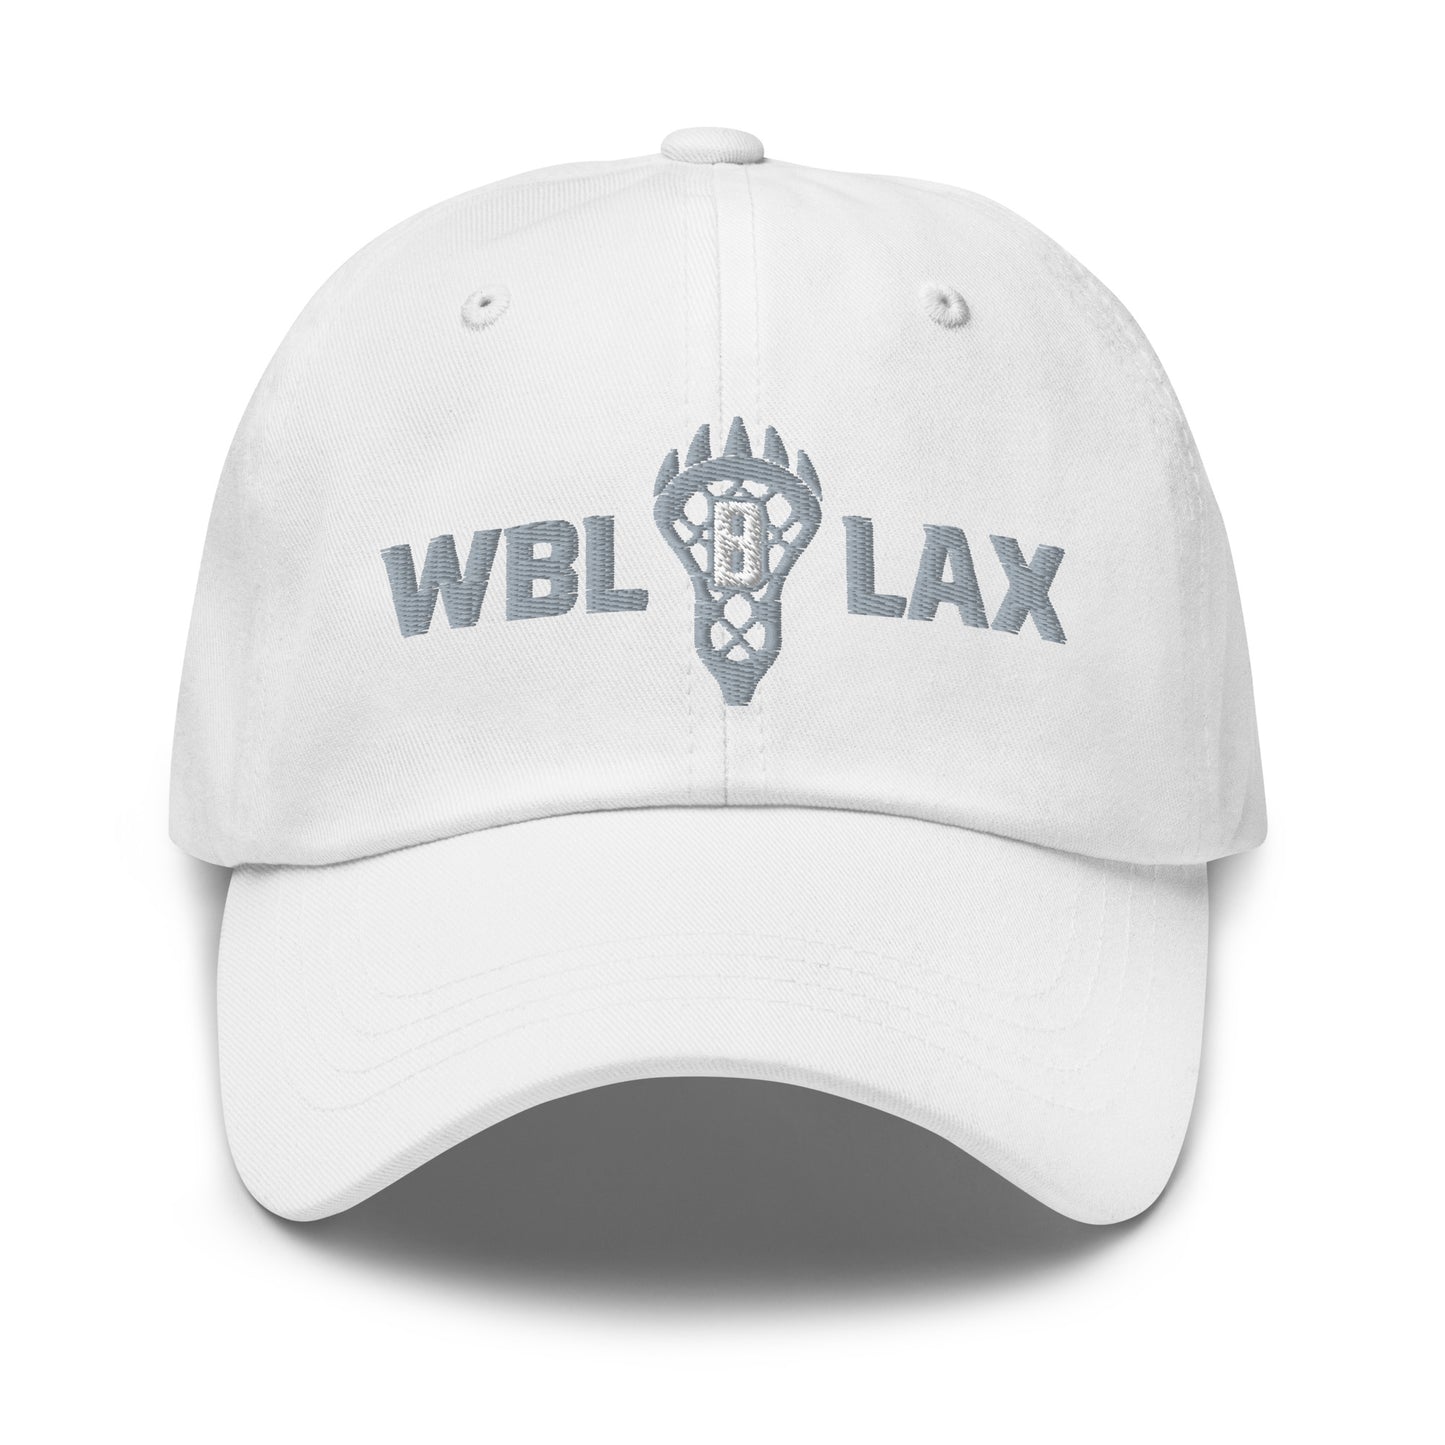 WBLAX Unstructured Hat